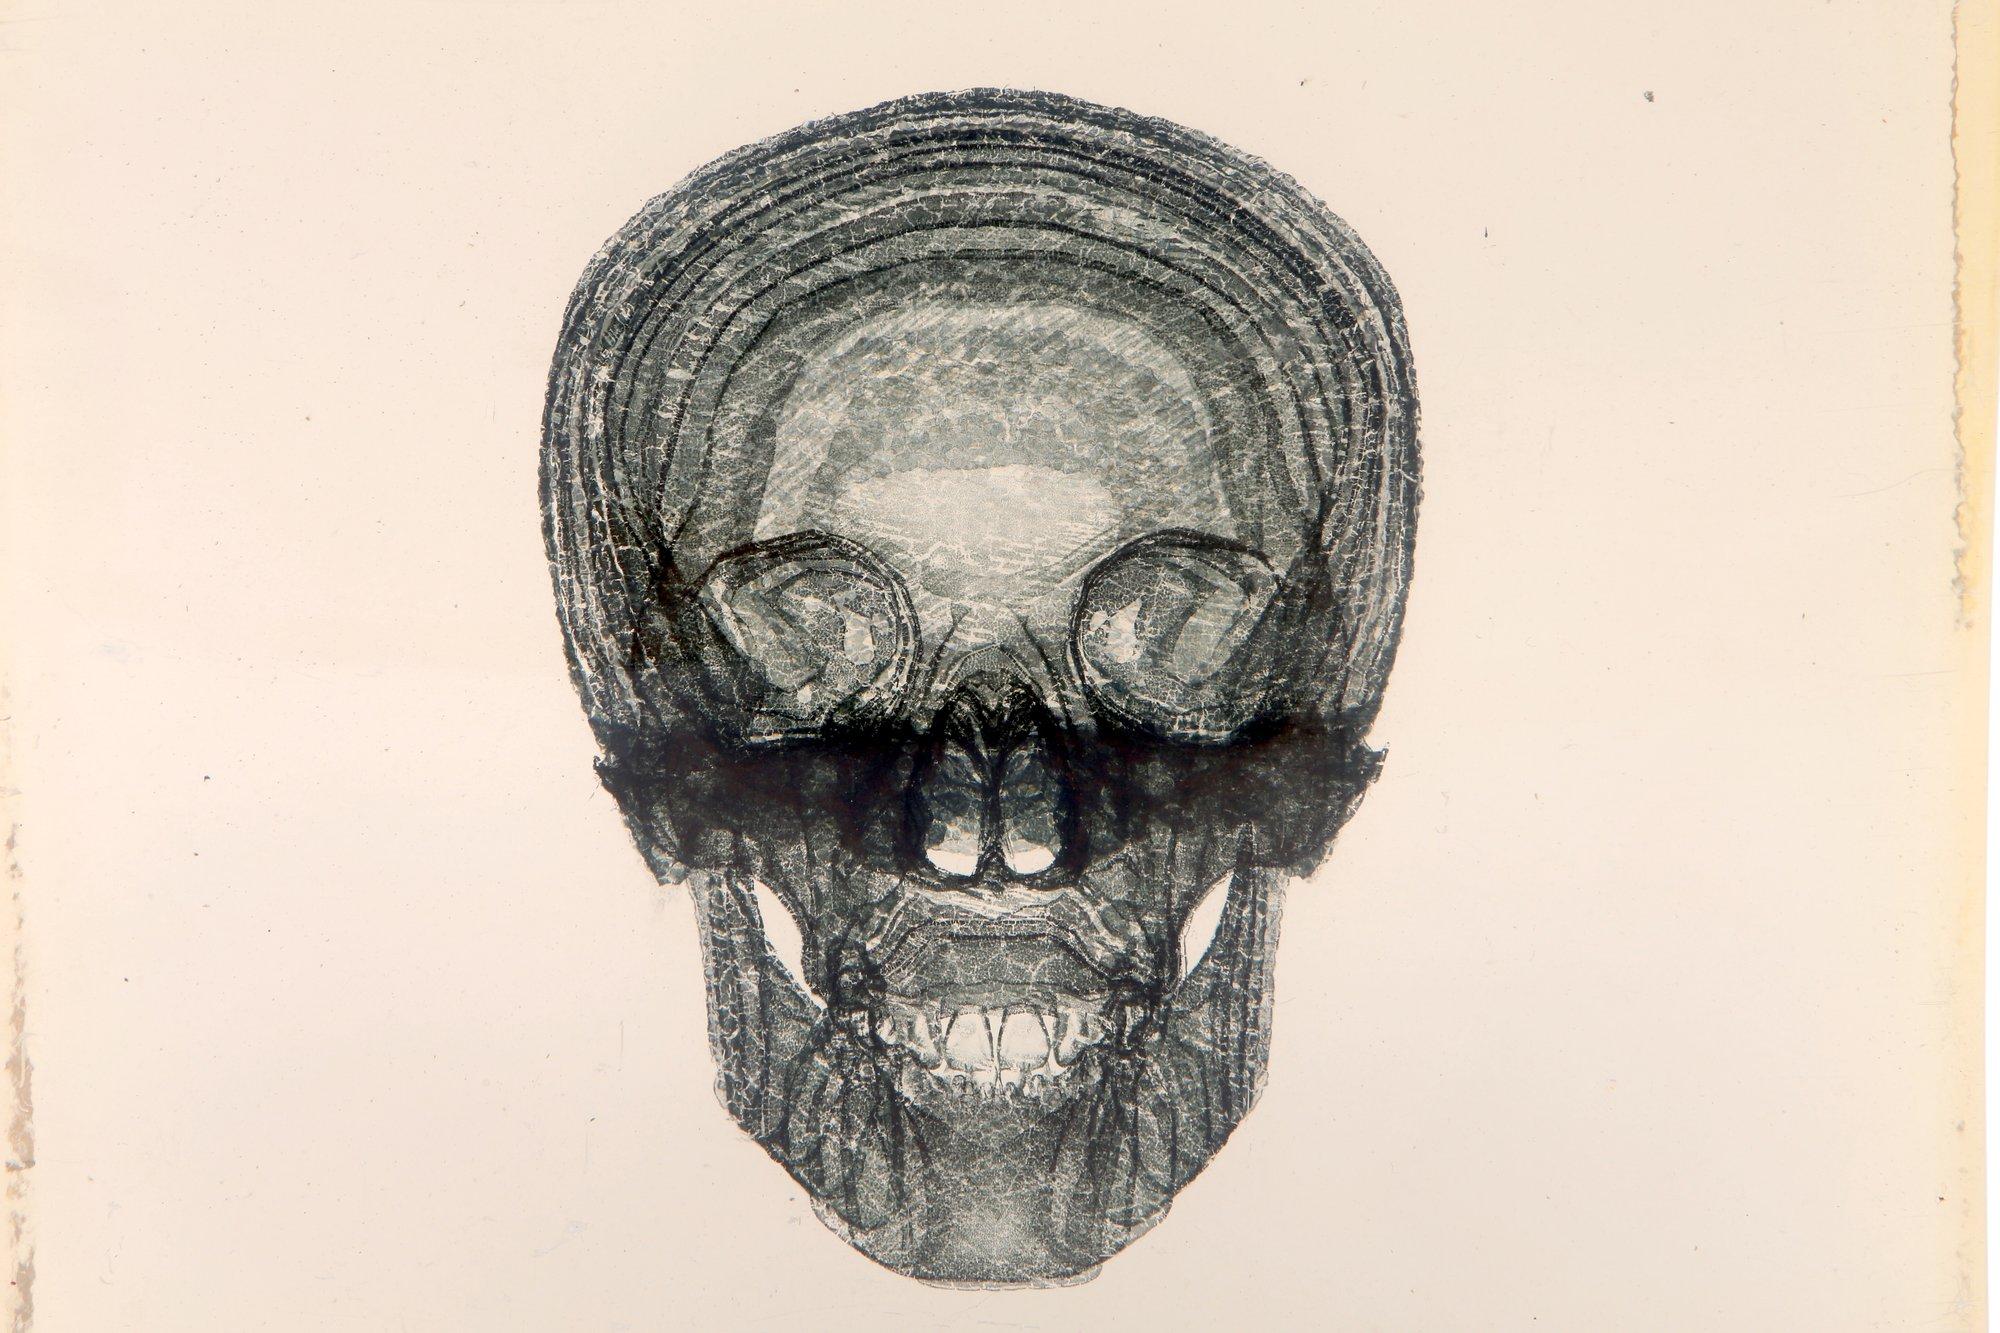 Dustin Yellin Skull Sculpture